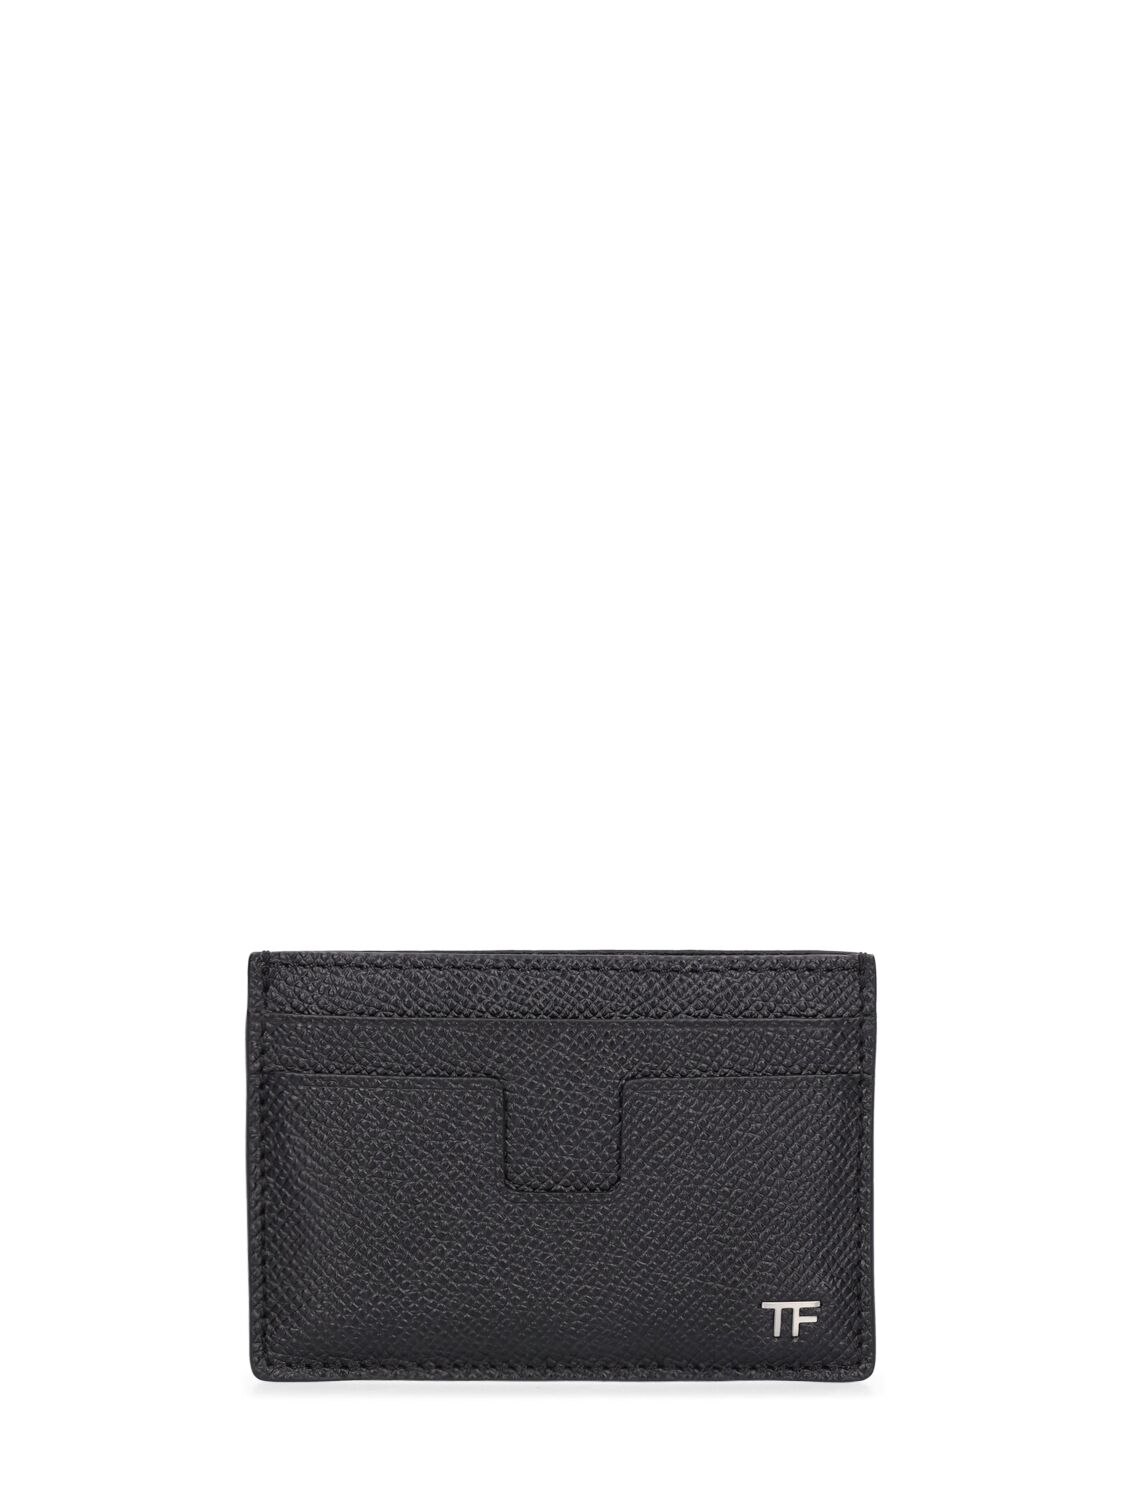 Tom Ford Small Grain Saffiano Leather Card Case In Black